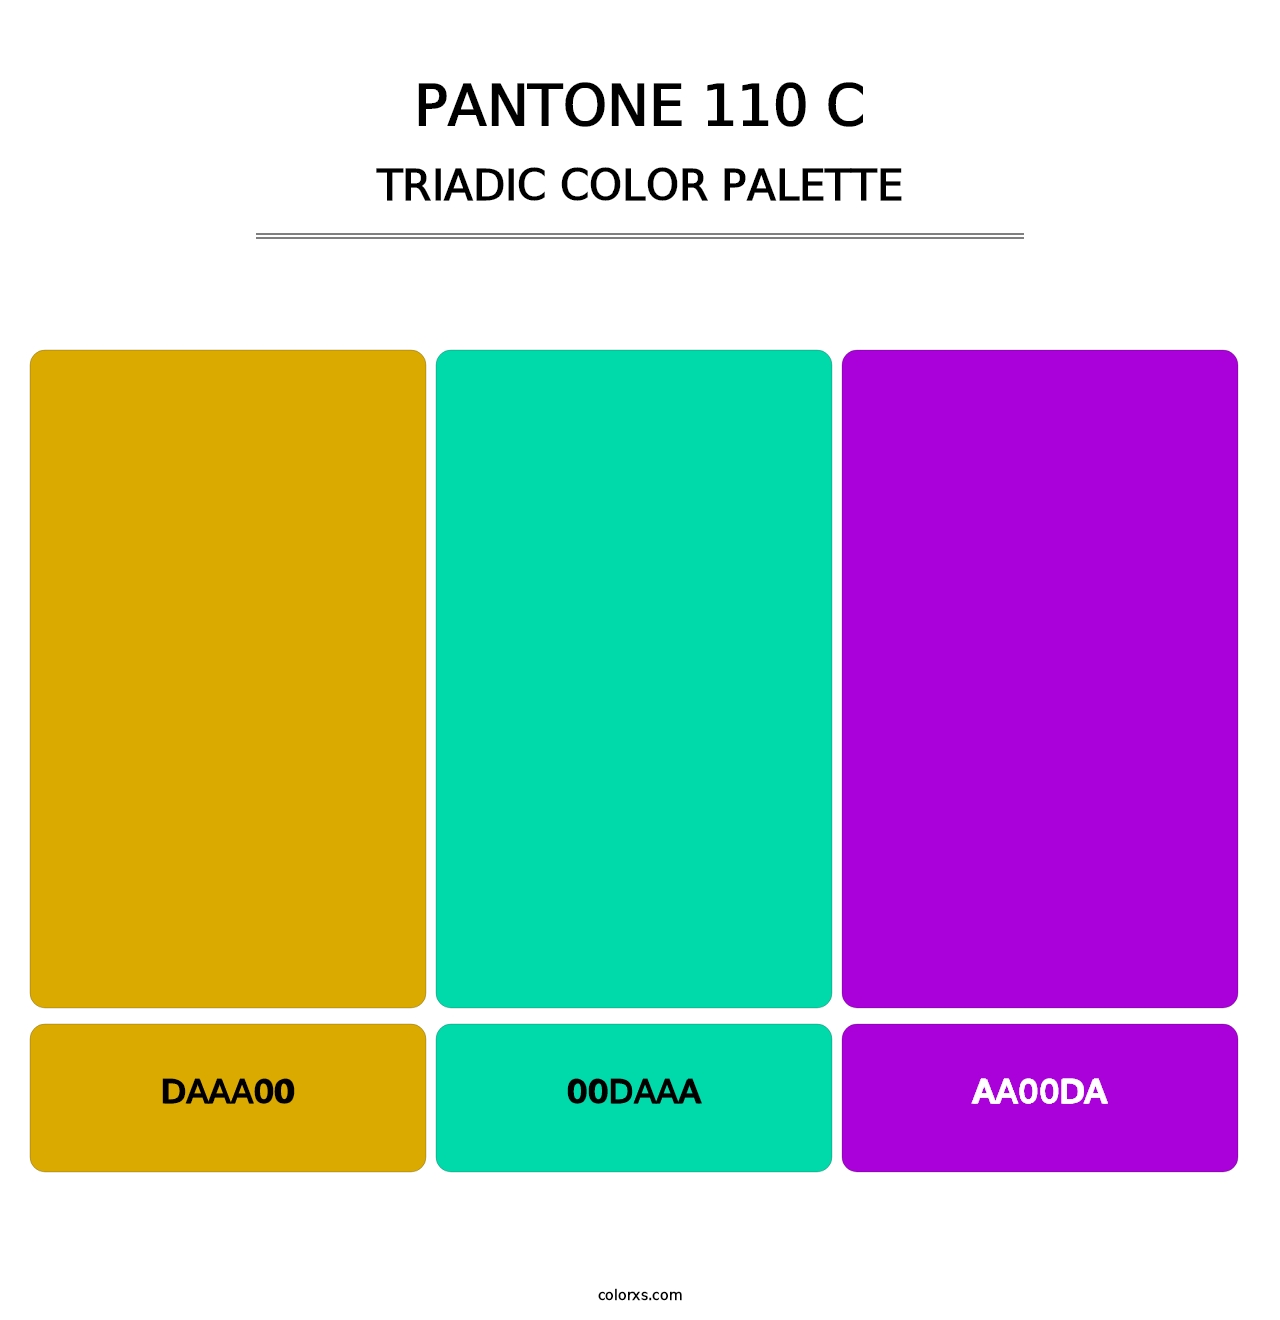 PANTONE 110 C - Triadic Color Palette